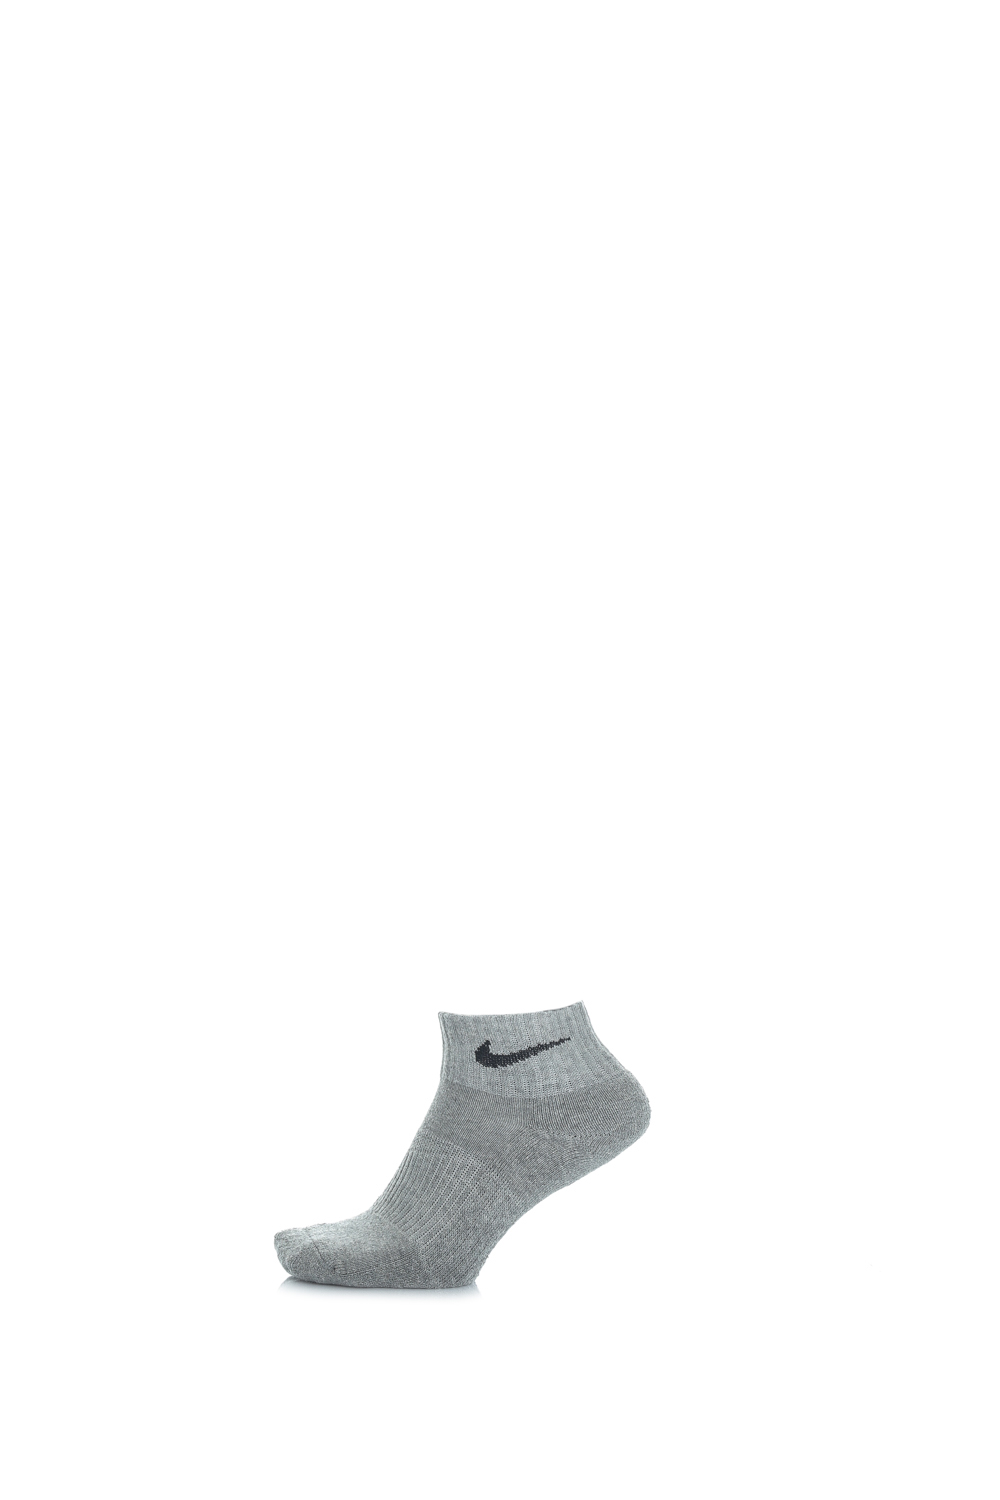 NIKE – Σετ από 3 ζευγάρια κάλτσες μαύρες-γκρι-λευκές 1154330.1-8291